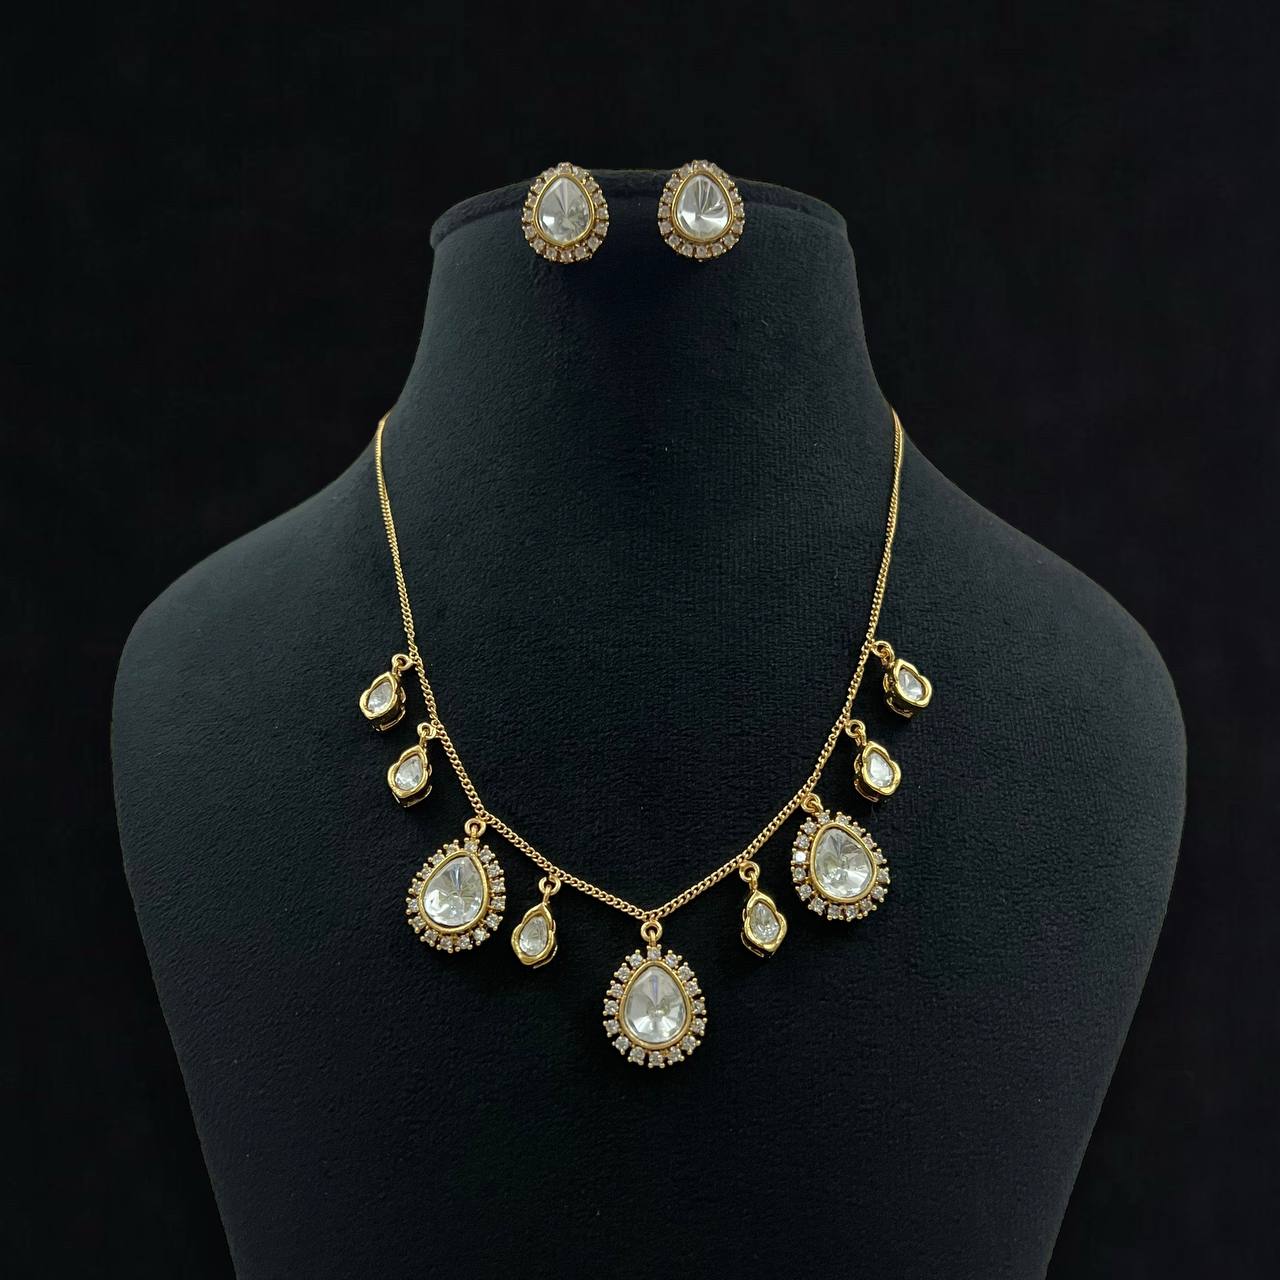 Kundan necklace set | Contemporary necklace